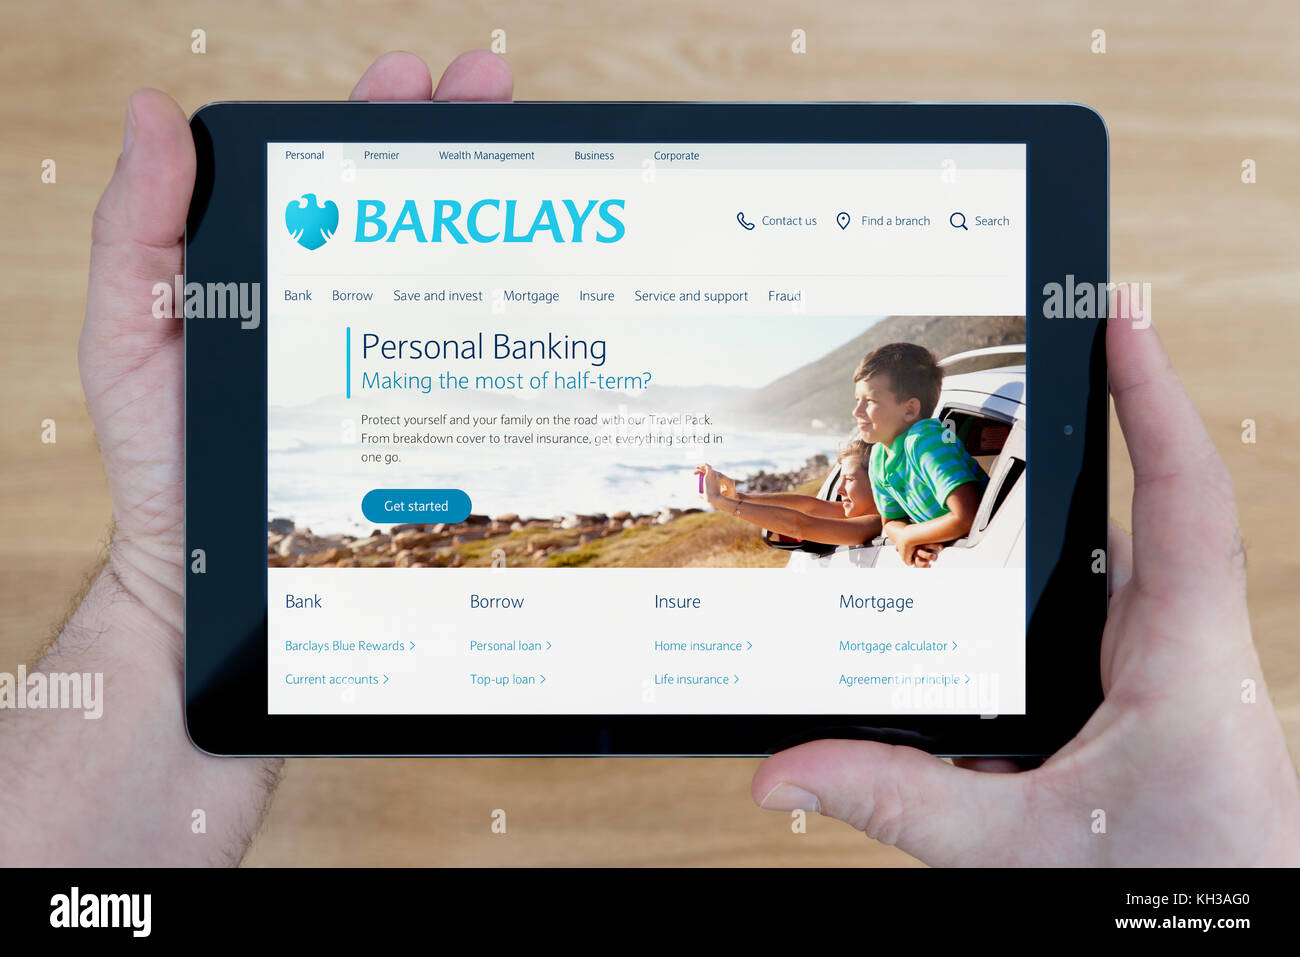 Un homme regarde la Barclays Bank site sur son iPad tablet device, tourné contre une table en bois page contexte (usage éditorial uniquement) Banque D'Images